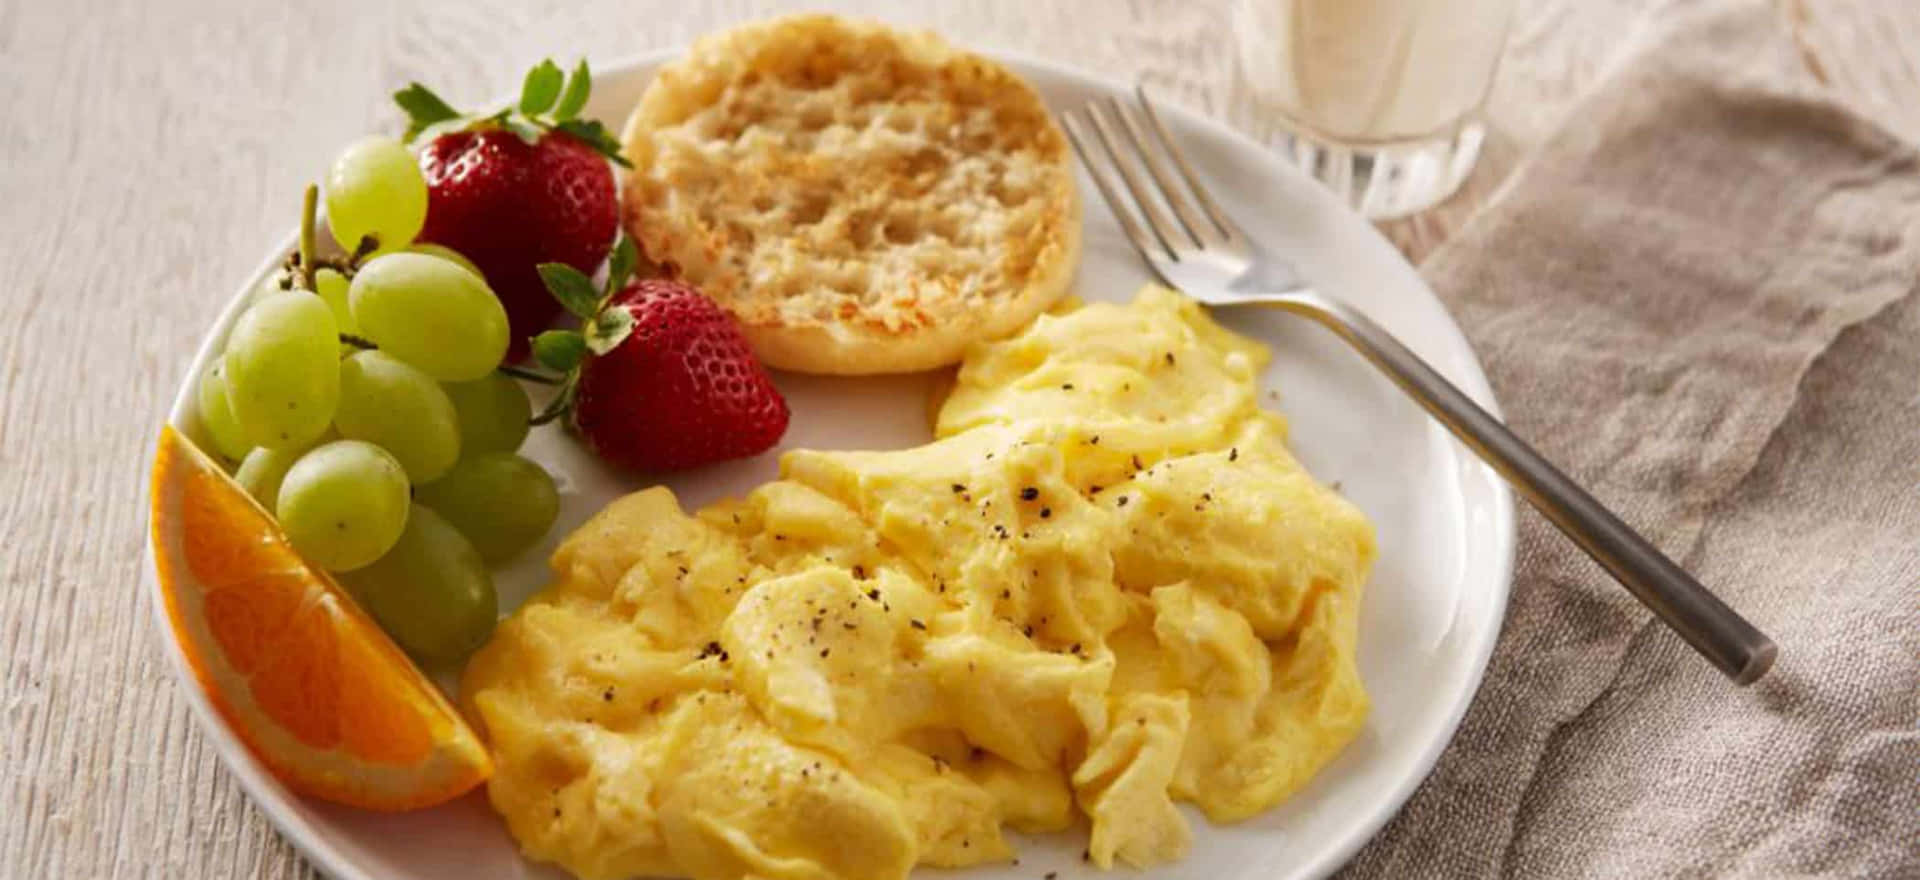 Delicious, fluffy scrambles eggs